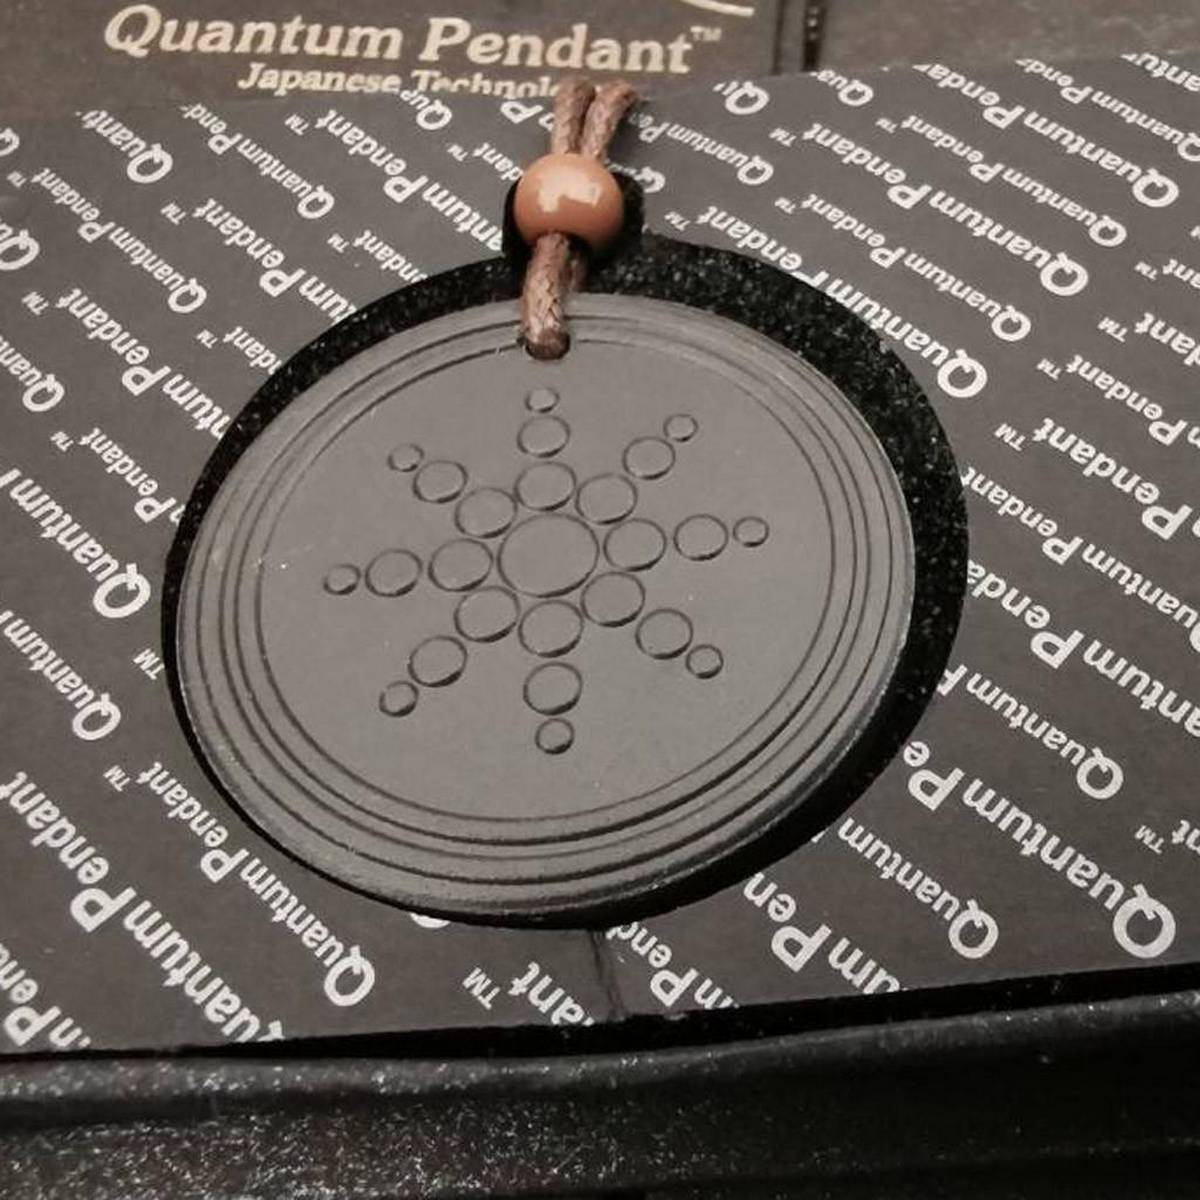 quantum pendant check serial number